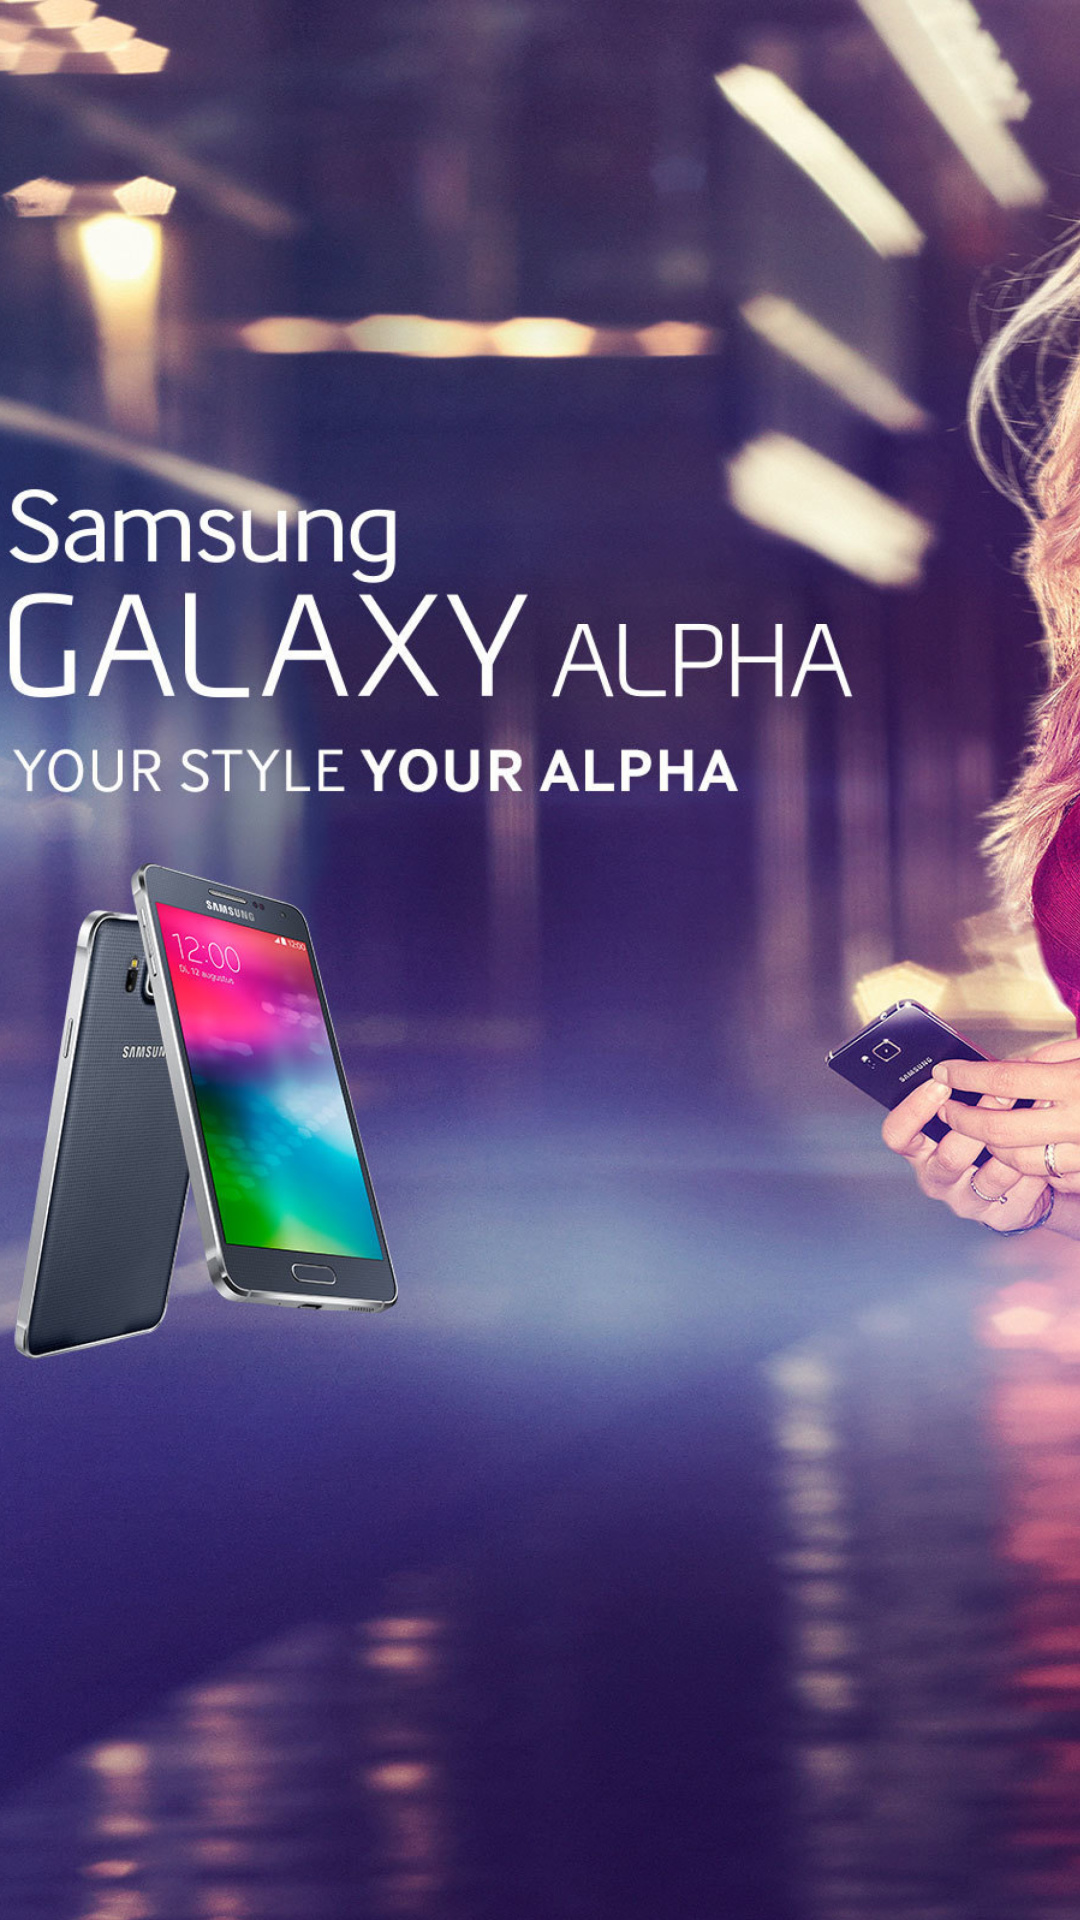 Samsung Galaxy Alpha Advertisement with Doutzen Kroes screenshot #1 1080x1920